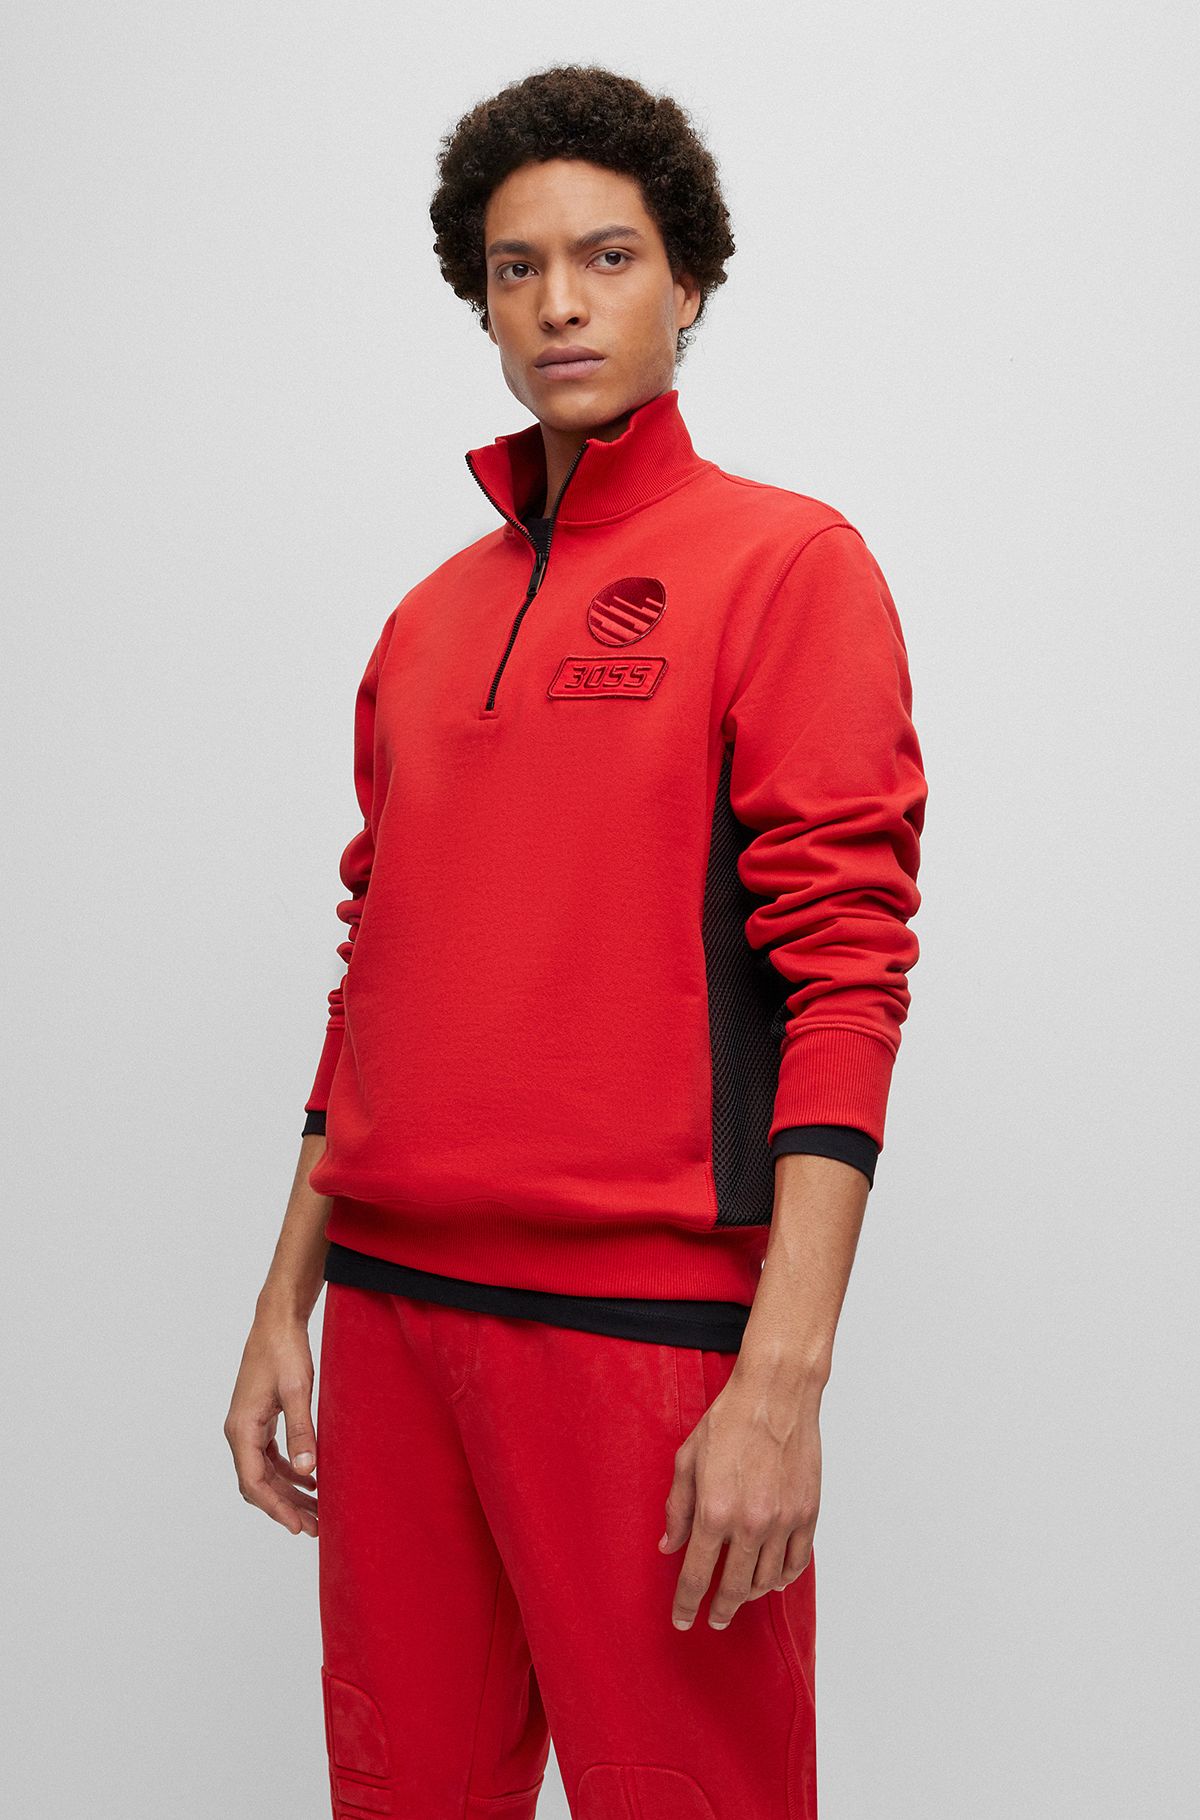 Cotton-terry zip-neck sweatshirt with racing-inspired details, Red